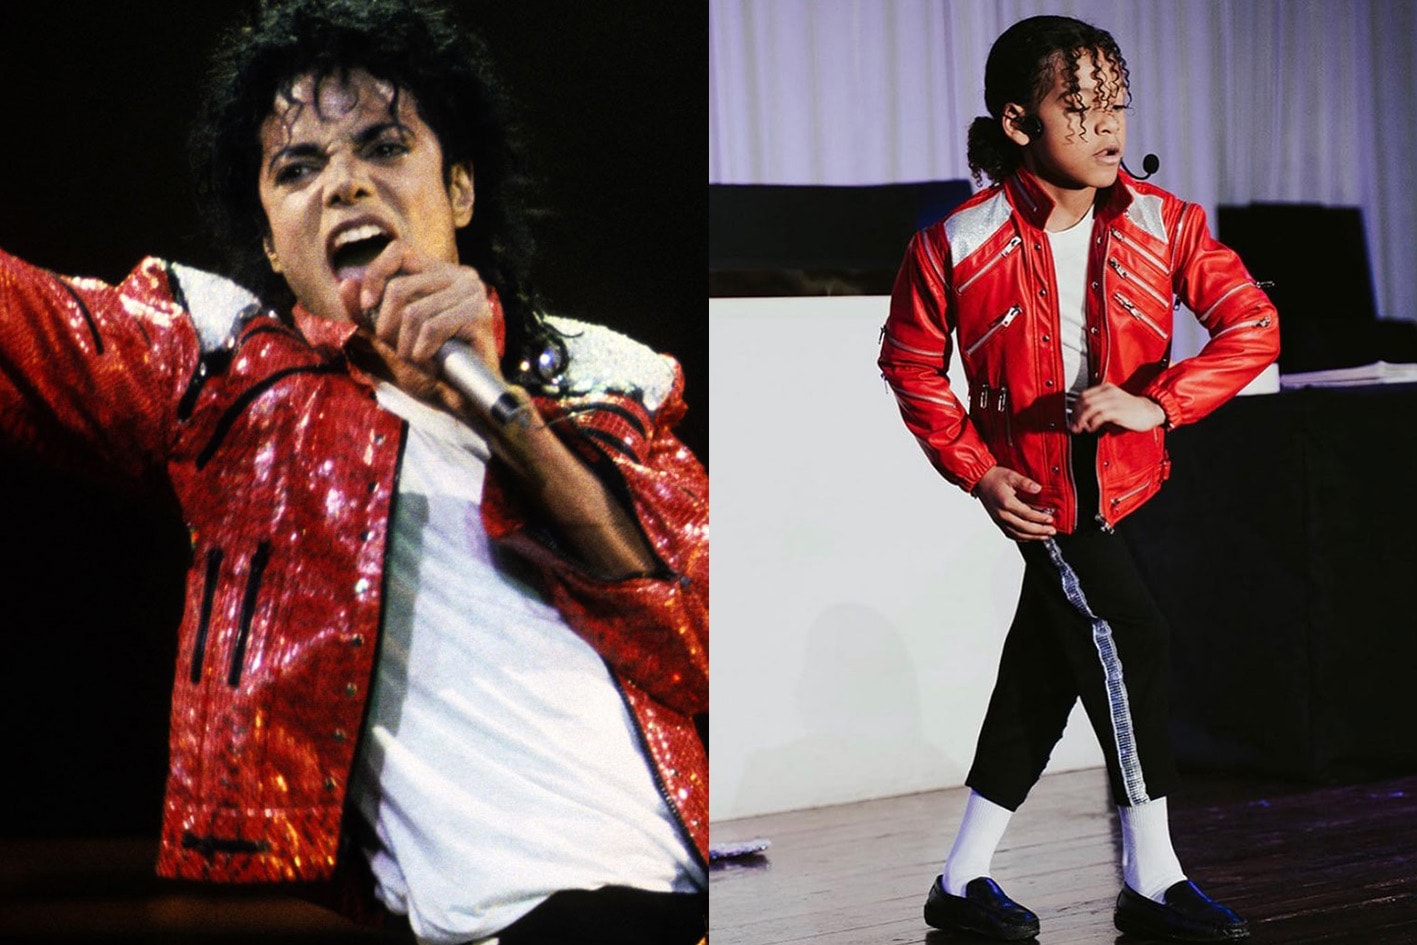 以模仿著称的九岁童星将出演 Michael Jackson 传记电影